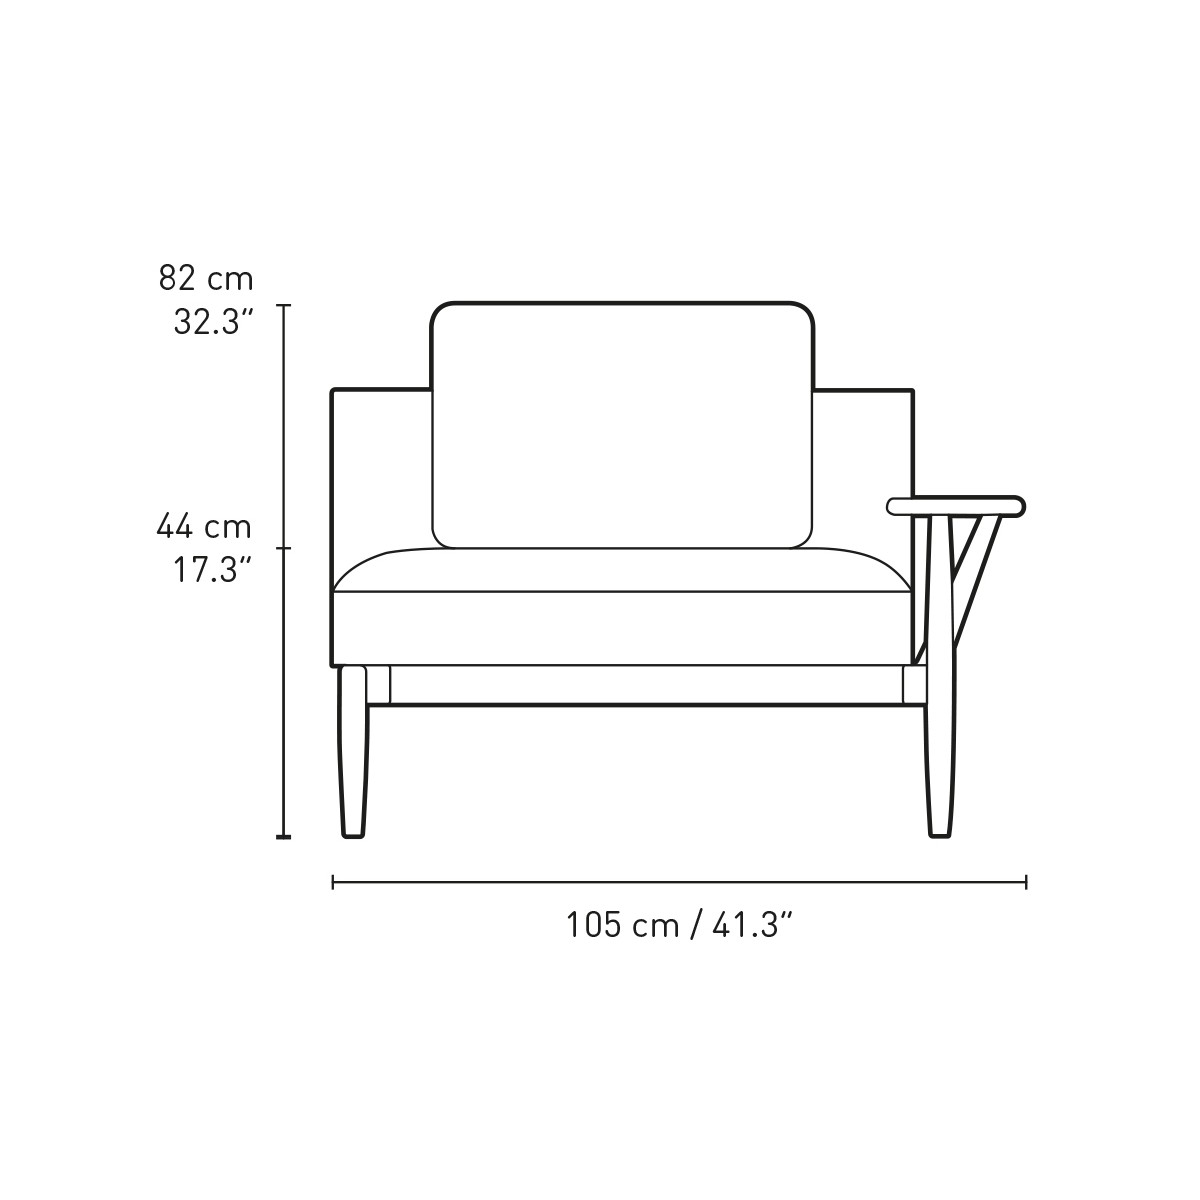 E320 right armrest - 1 cushion included - Embrace sofa